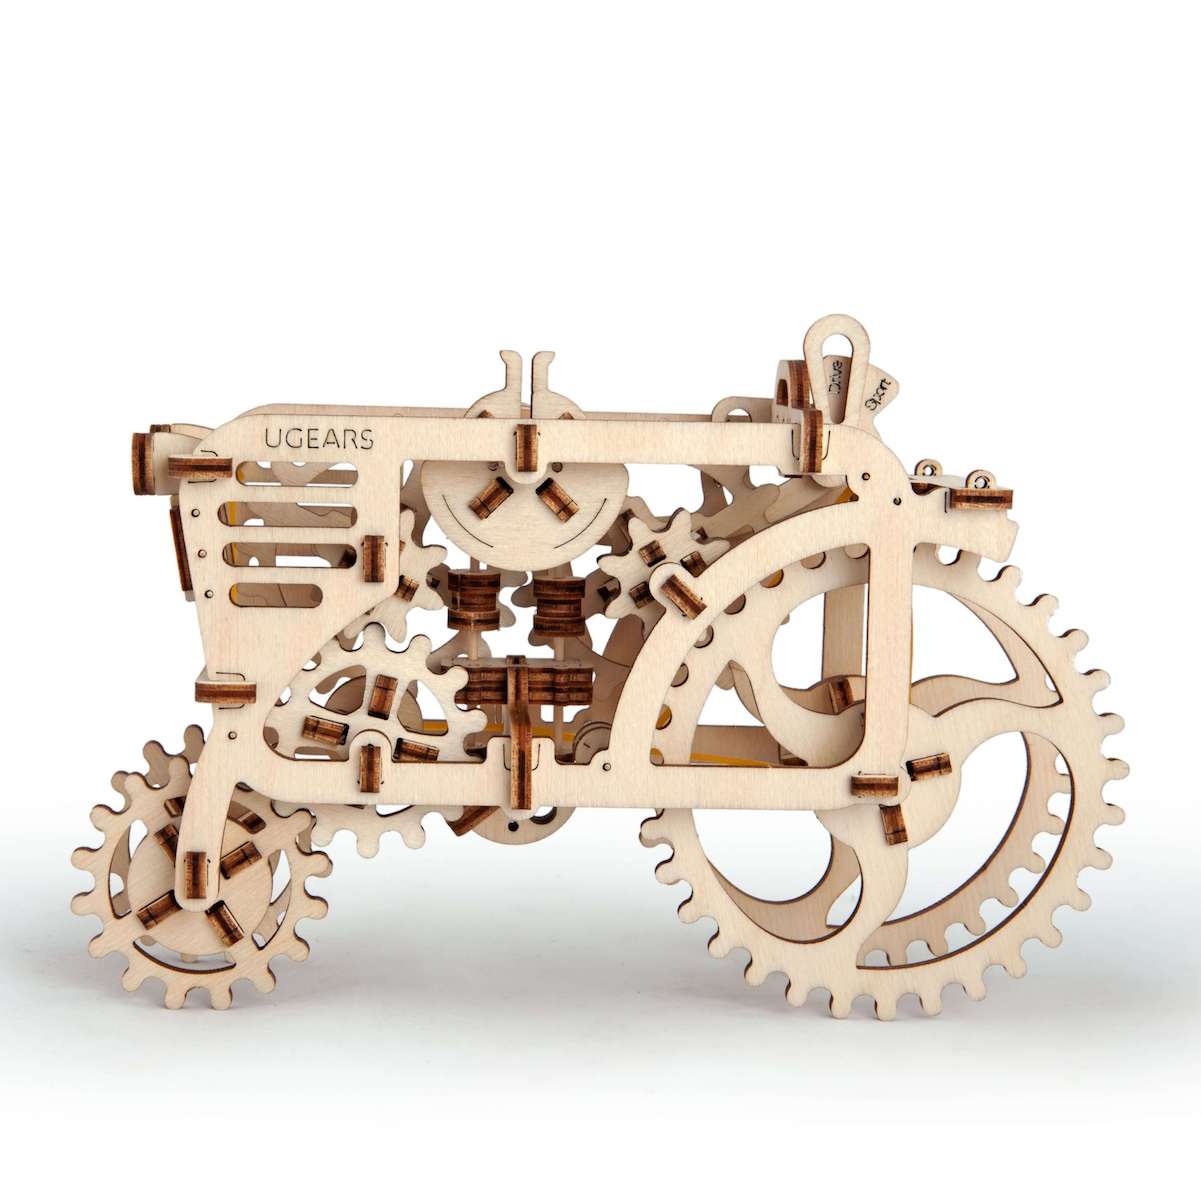 https://ugears-models.fr/wp-content/uploads/2018/10/02.-tracteur-puzzle-3d-m%C3%A9canique-en-bois-ugears-france.jpg